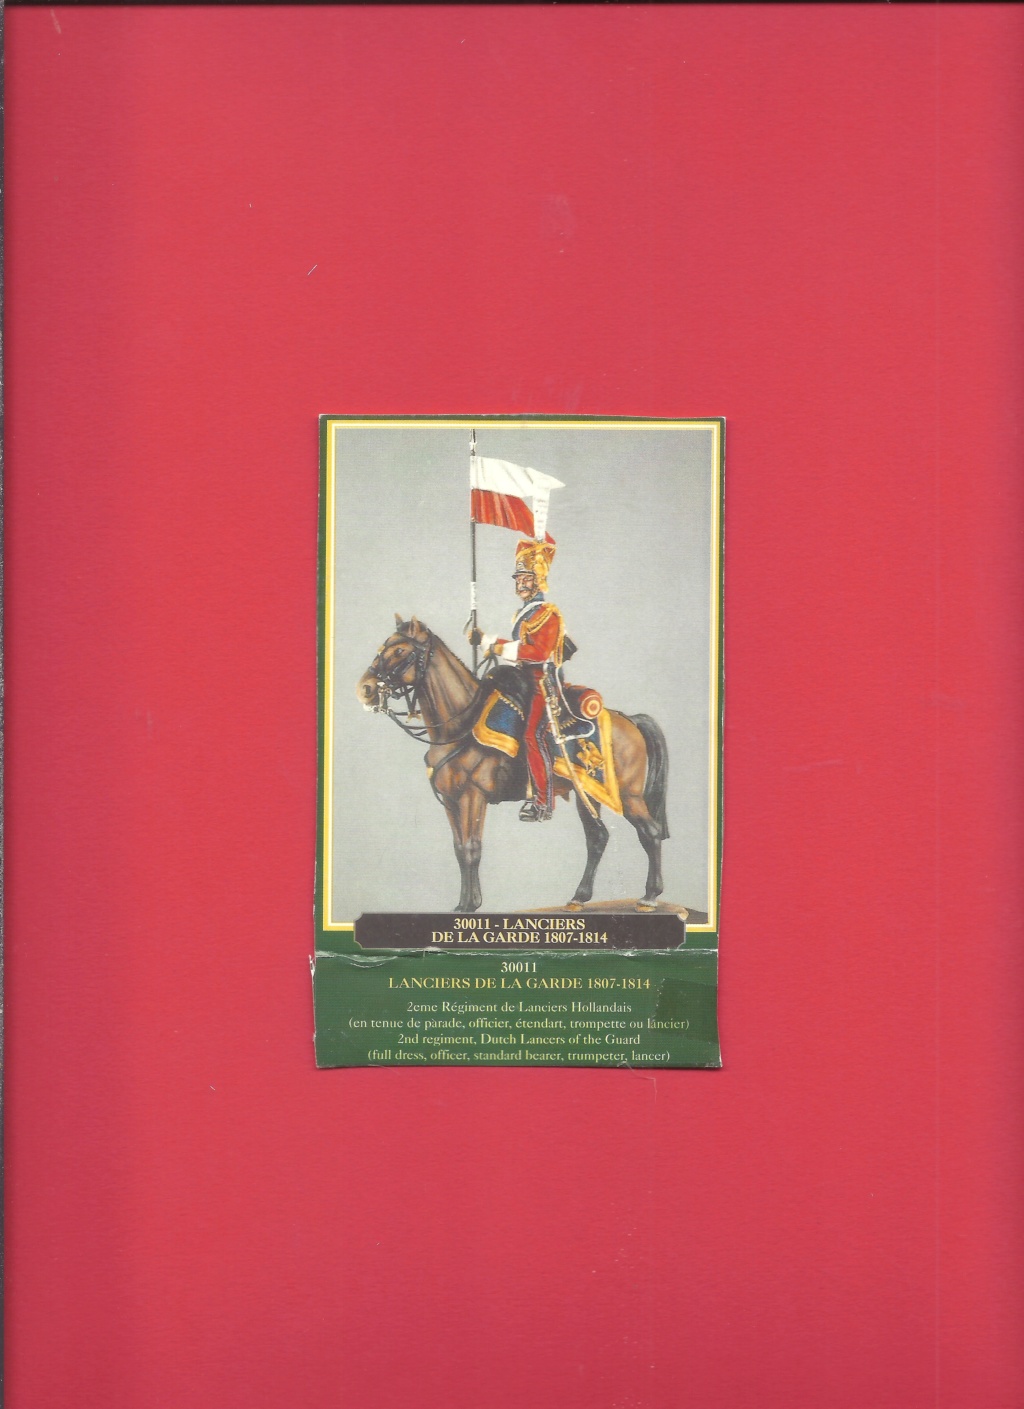 [HISTOREX] 2ème Régiment de Chevau-légers Lanciers dit Lancier hollandais de la Garde Impériale 1810 - 1815 1/30ème Réf 30011 Notice Histo164